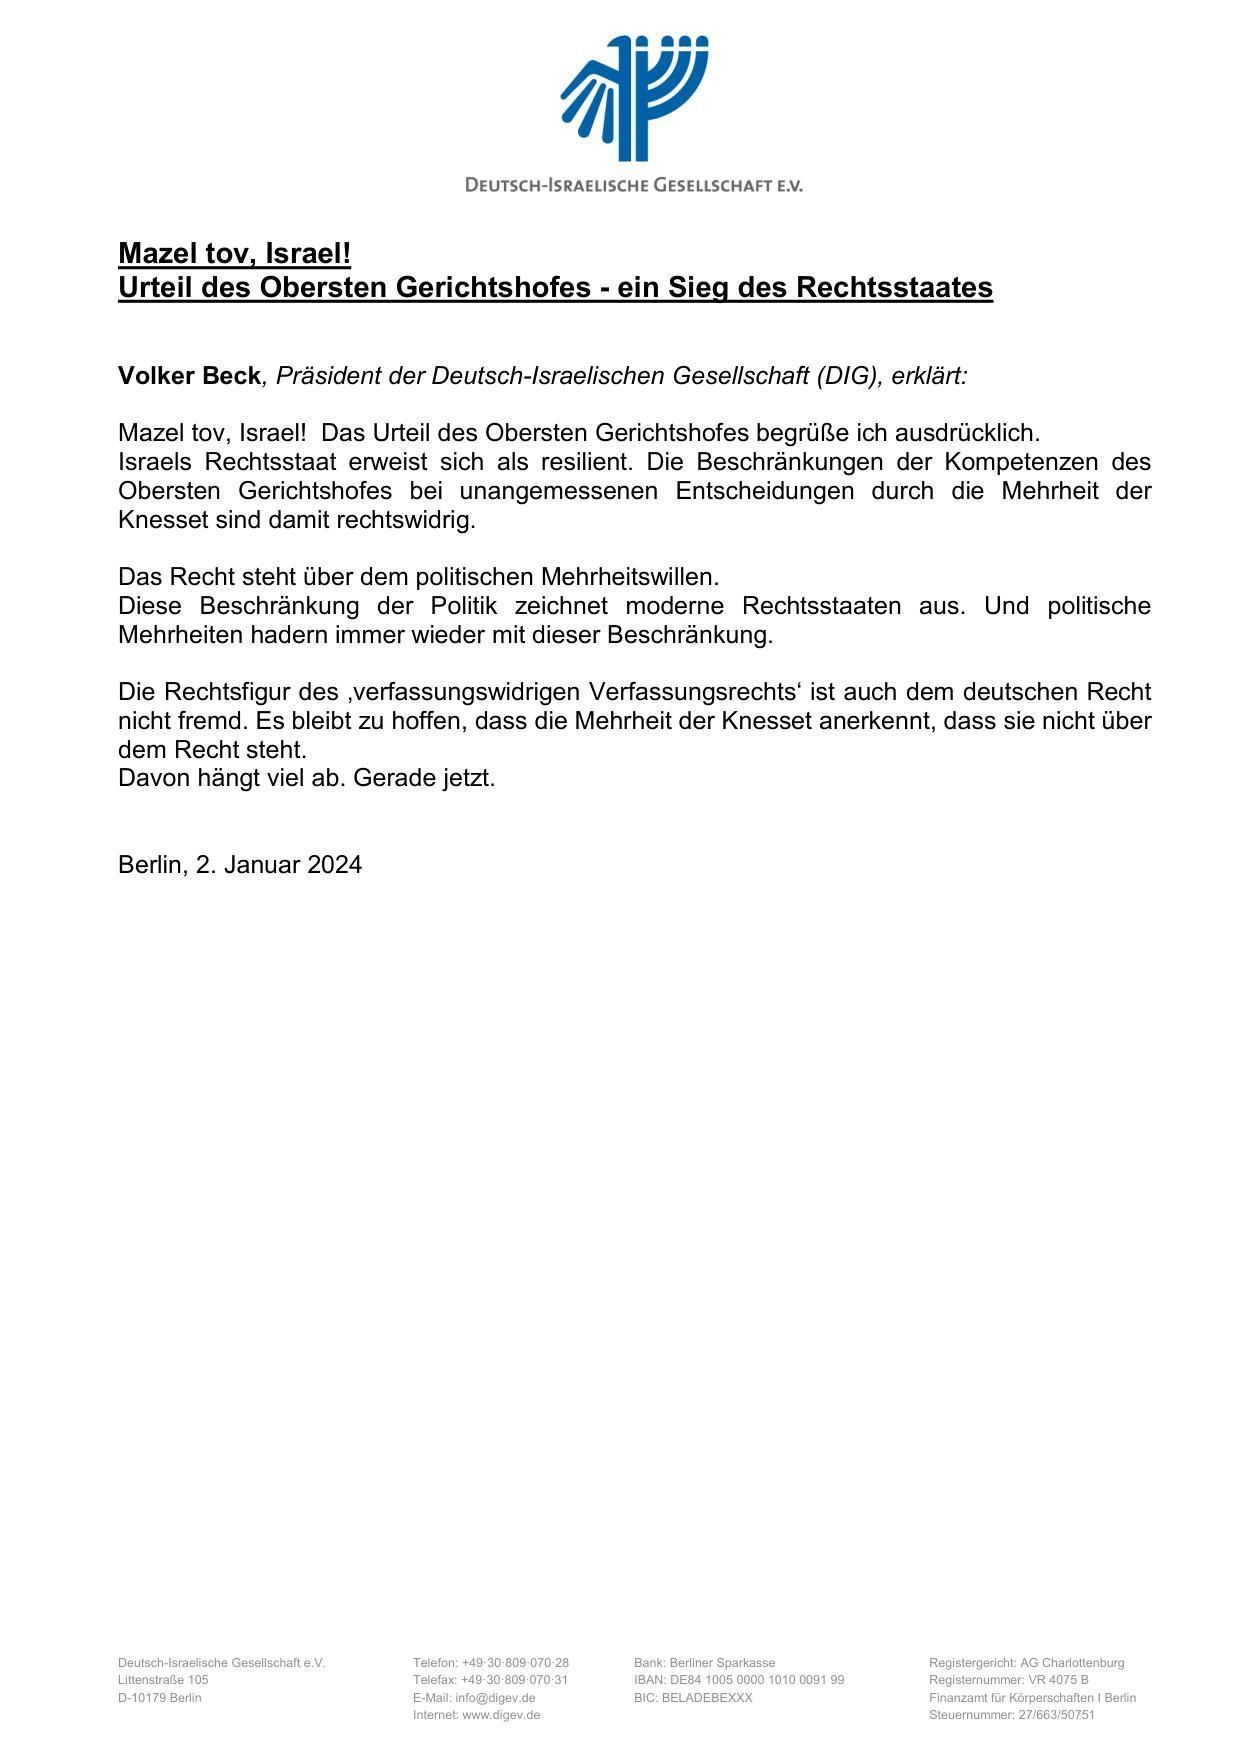 Pressemitteilung von Volker Beck, Präsident der DIG Deutschland, zum Urteil des Obersten Gerichtshofes - ein Sieg des Rechtsstaates. Zum Downloaden auf den Brief klicken!